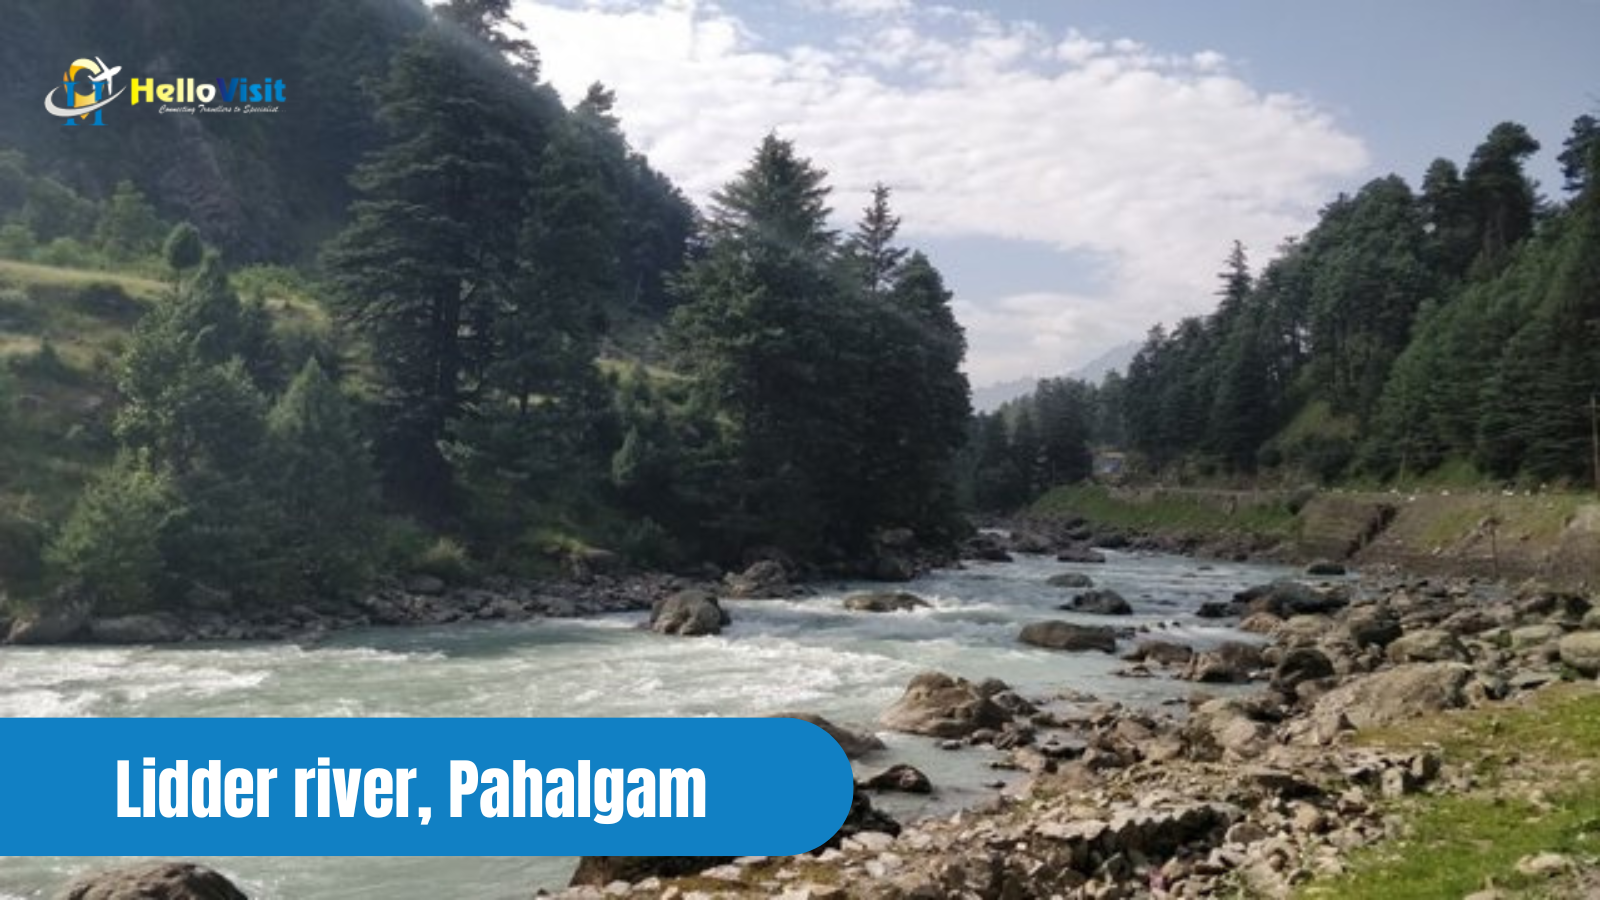 Lidder river, Pahalgam